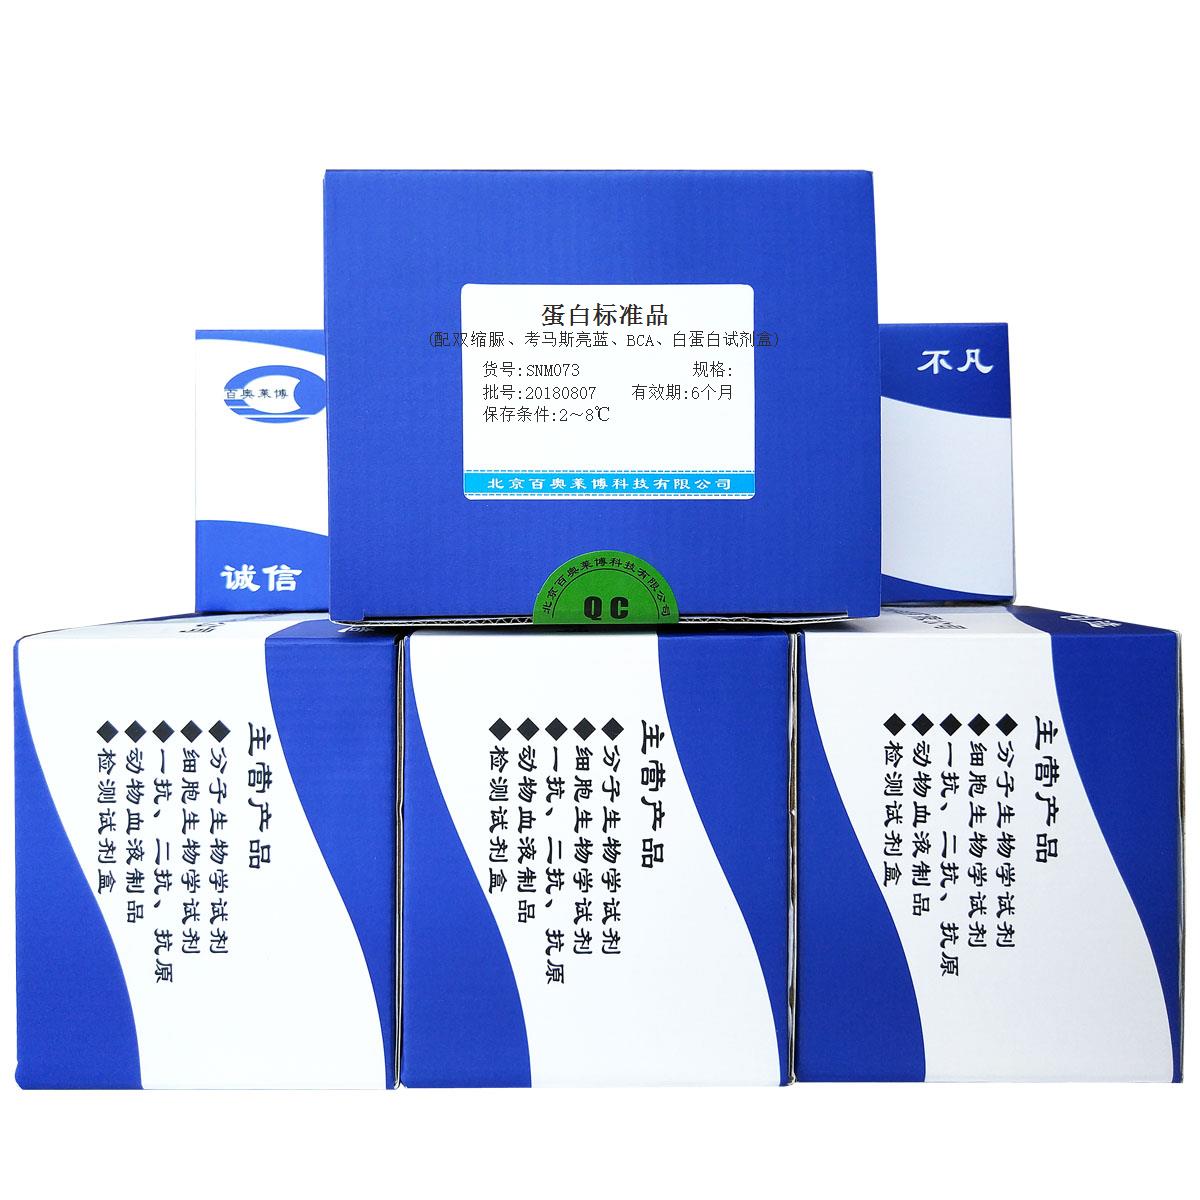 蛋白标准品(配双缩脲、考马斯亮蓝、BCA、白蛋白试剂盒)